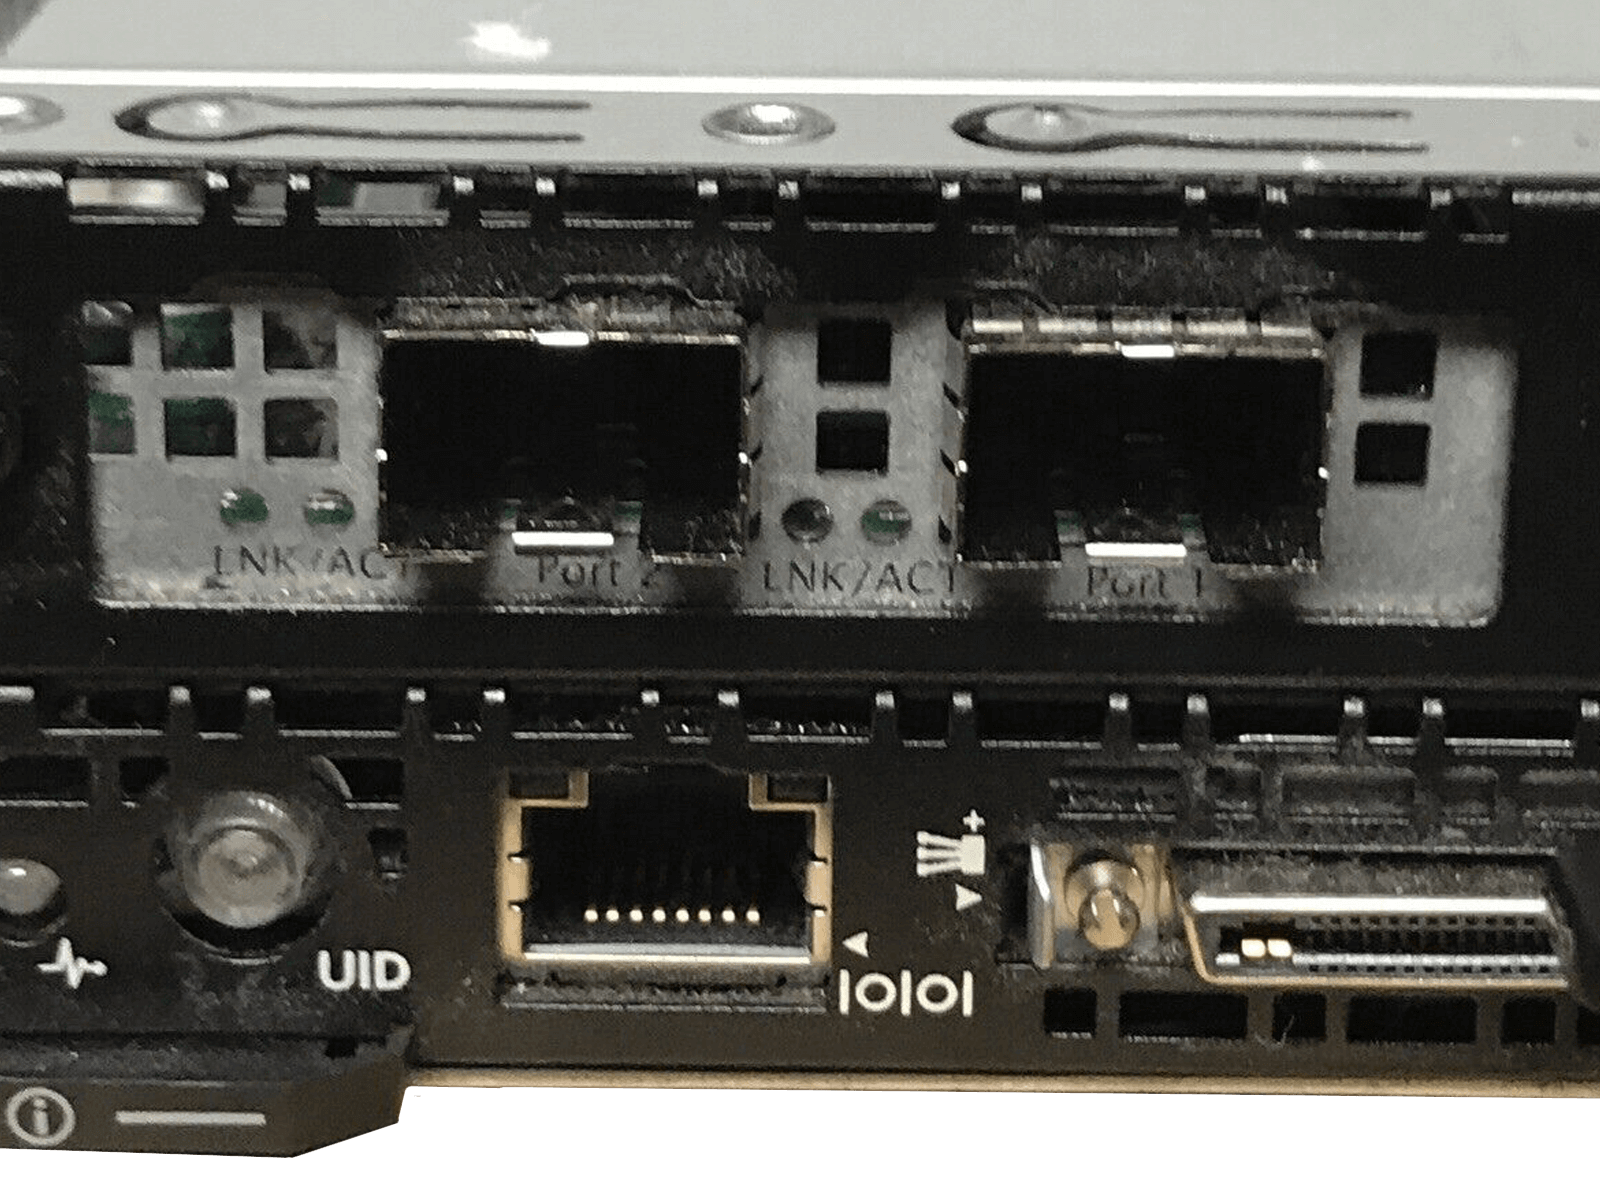 HP ProLiant S6500 8x SL230s 16x E5-2650V2 8x 128GB 16x 200GB SSD 10G NIC 8G FC.